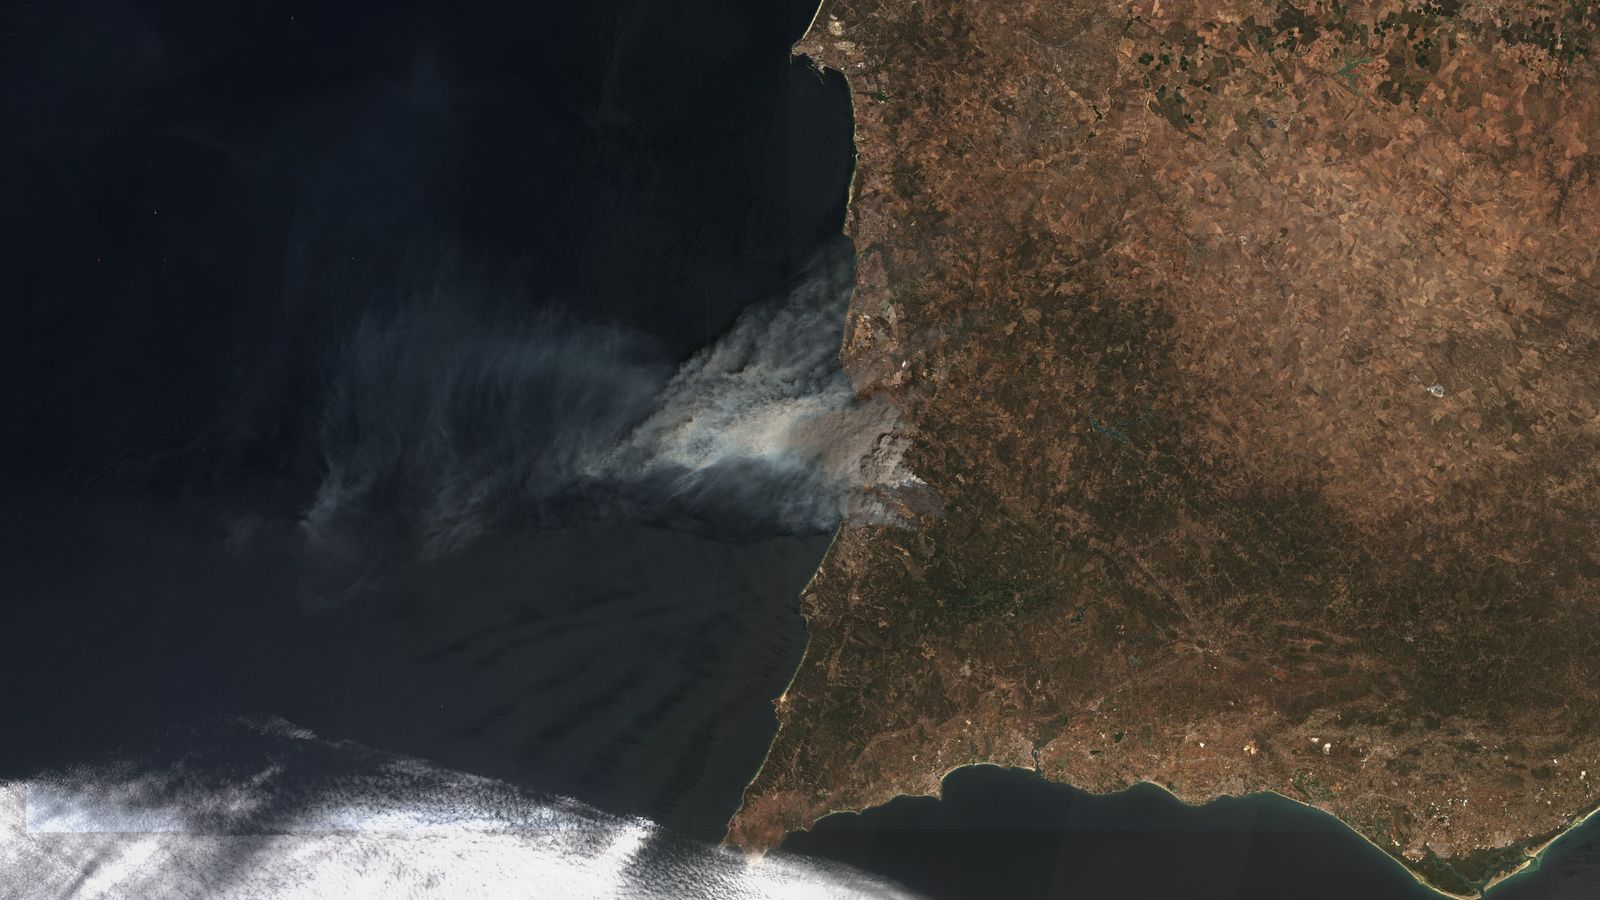 Incêndios florestais em Portugal: Nova imagem de satélite mostra incêndio perto do Algarve |  Noticias do mundo